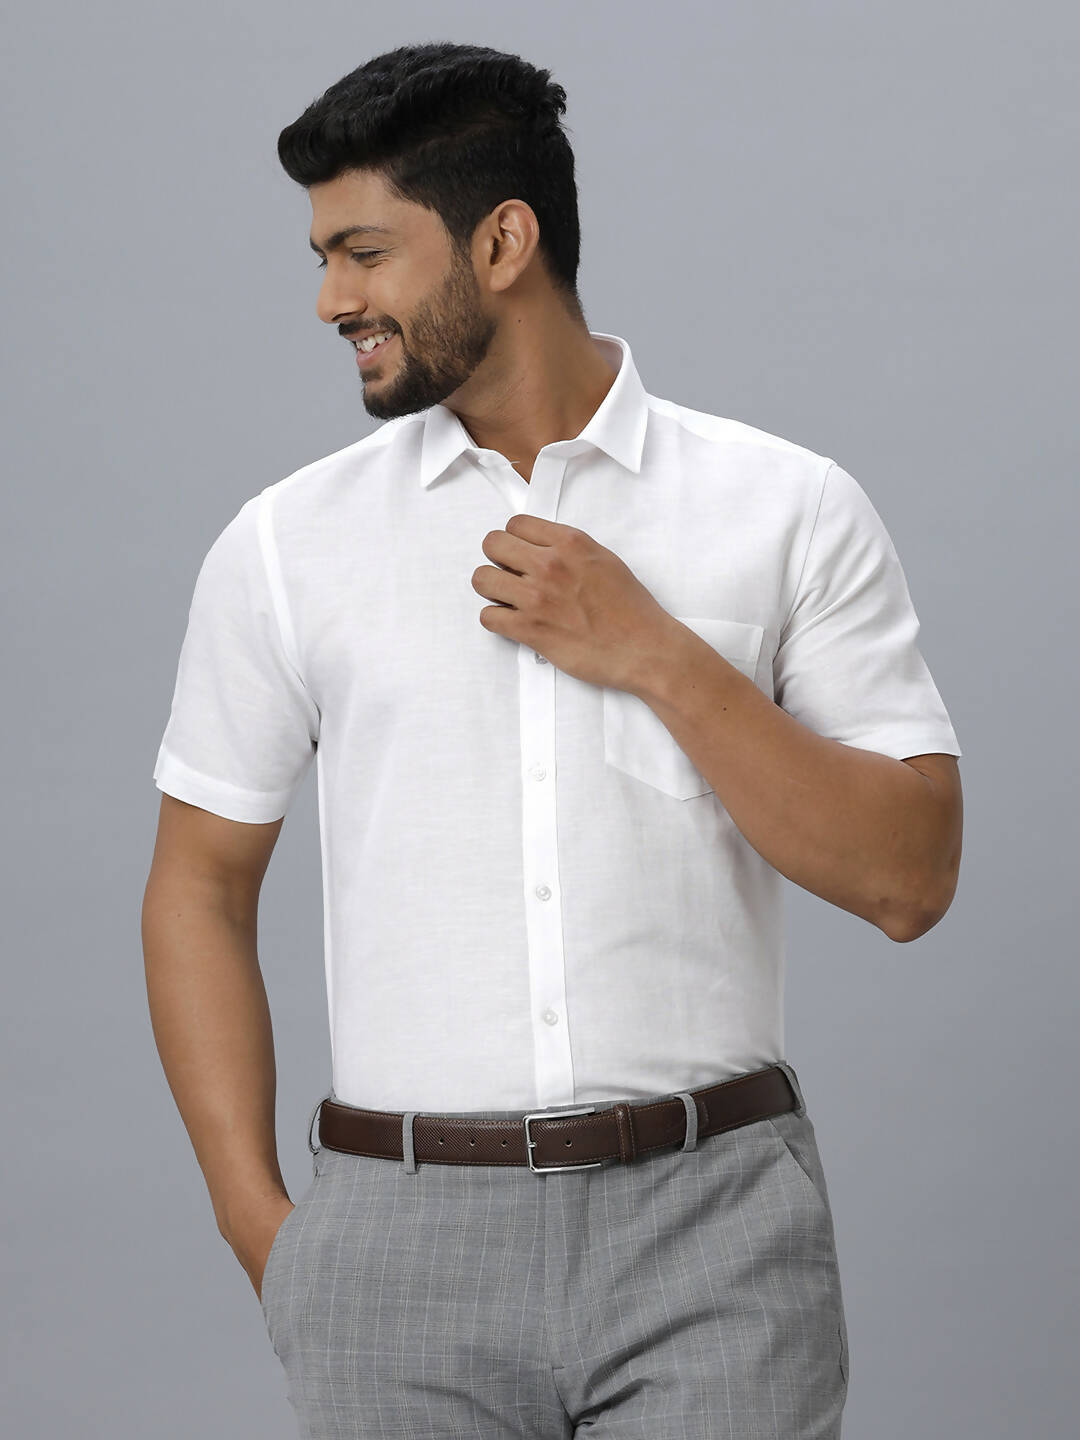 Buy Ramraj Cotton Mens Half Sleeve Formal 100 % Cotton White Shirt